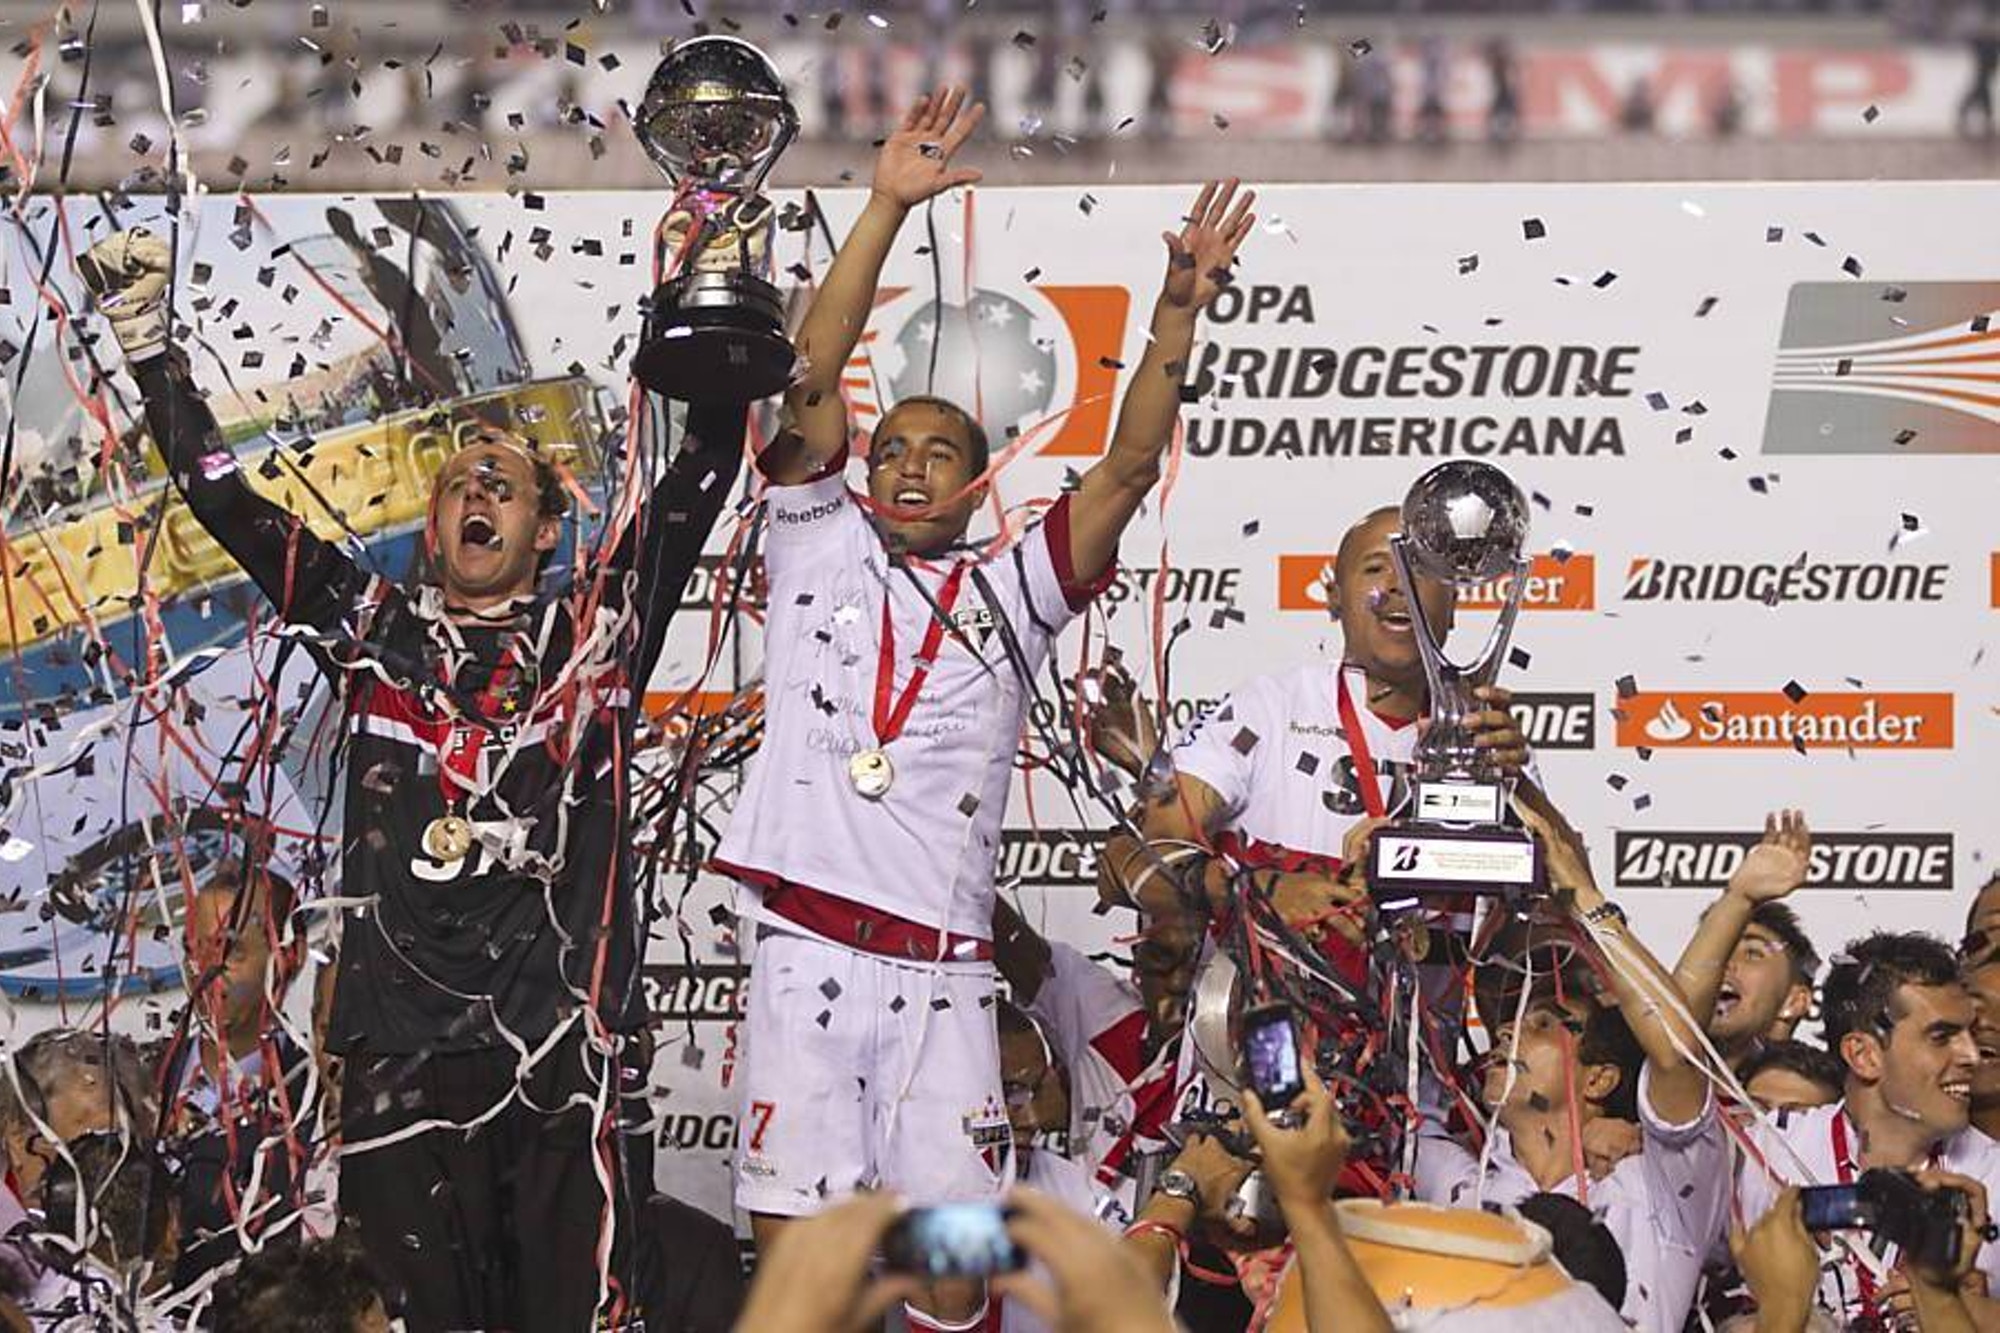 Quando foi o último título conquistado pelo São Paulo?